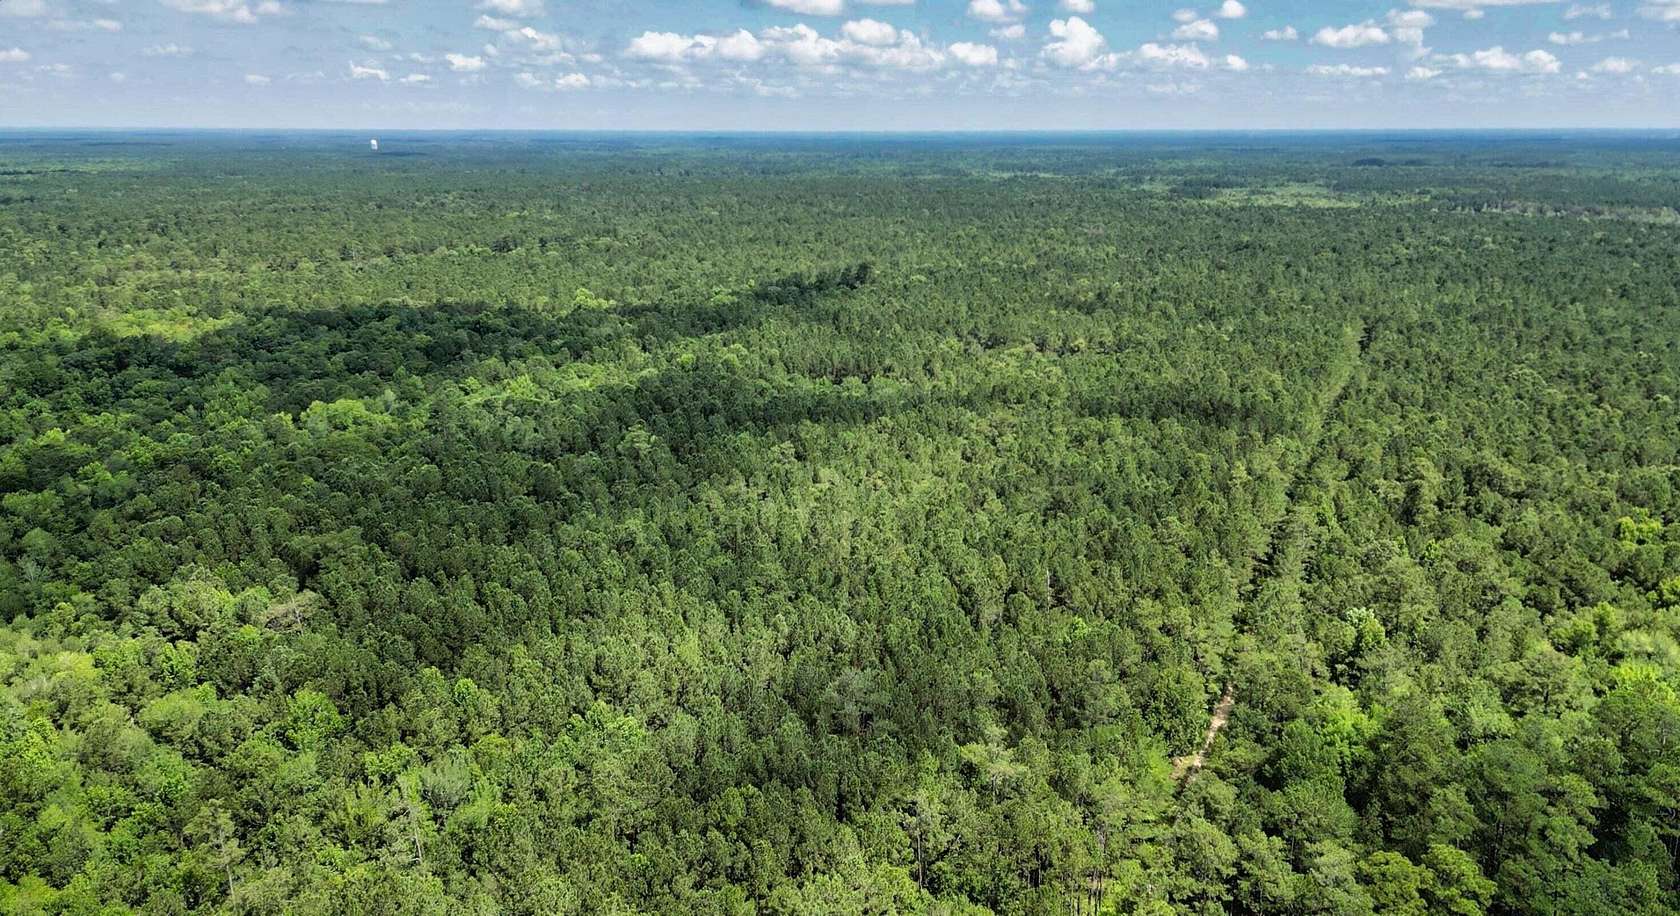 14 Acres of Land for Sale in Huger, South Carolina